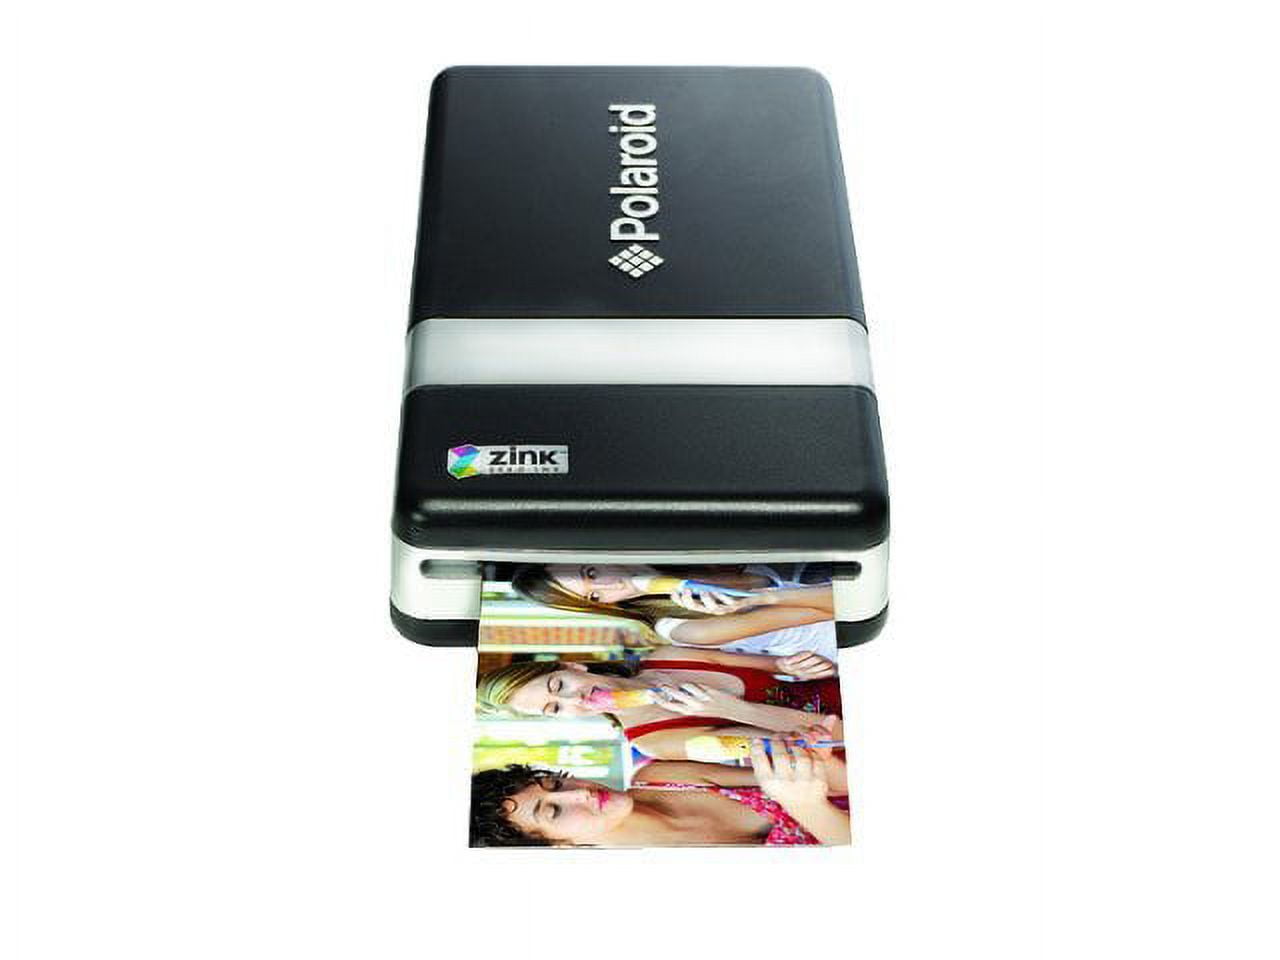 Review: Polaroid PoGo Portable Printer